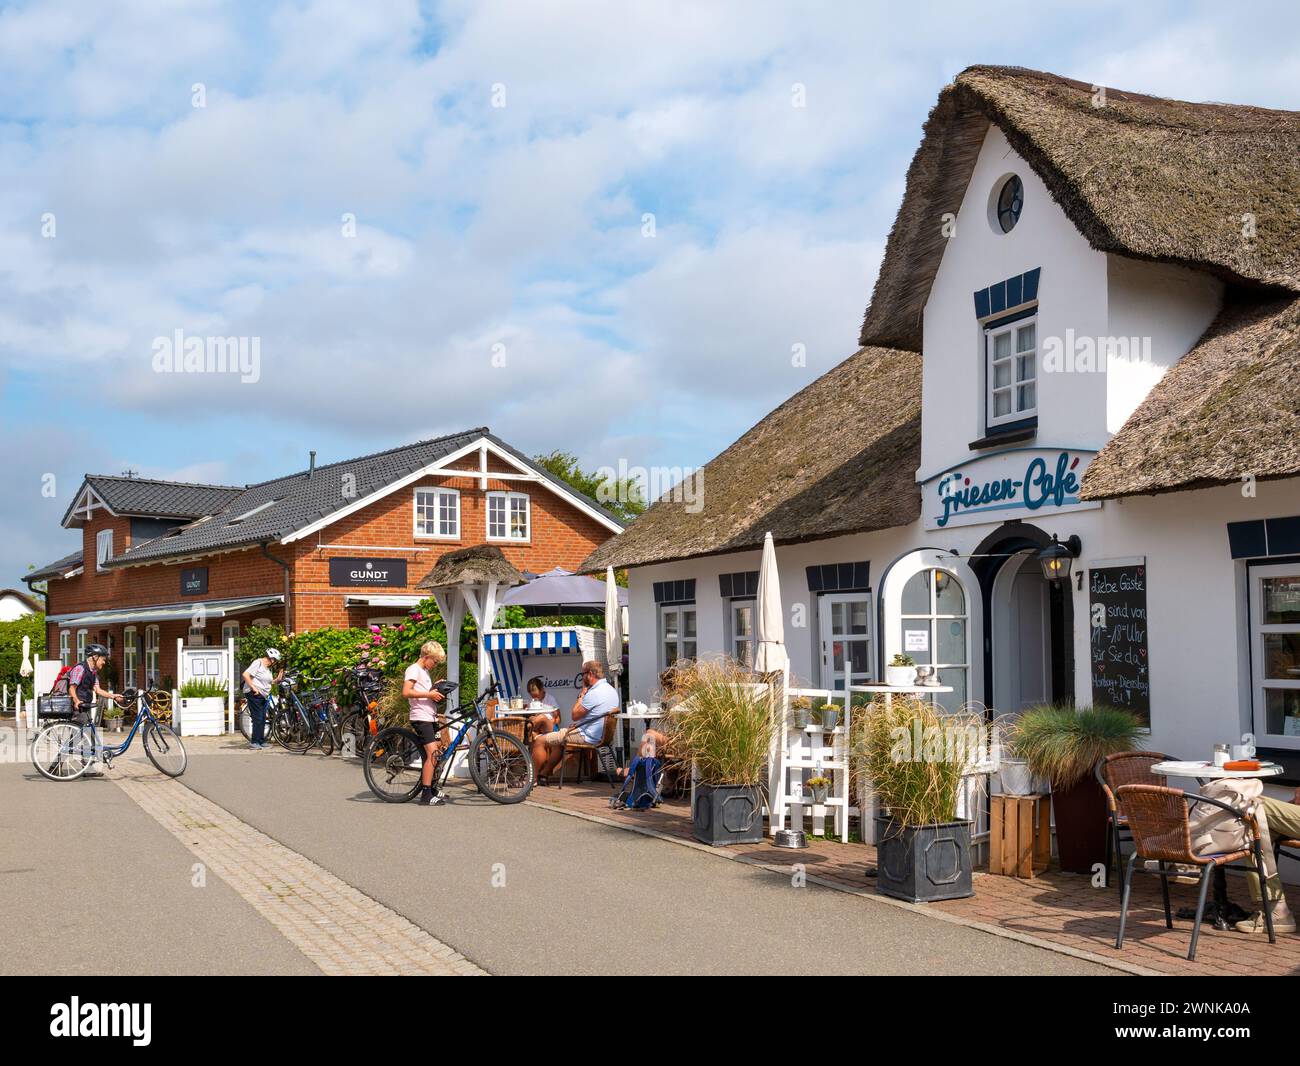 Strada con caffetterie all'aperto nella città vecchia di Nebel, l'isola di Amrum, la Frisia settentrionale, Schleswig-Holstein, Germania Foto Stock